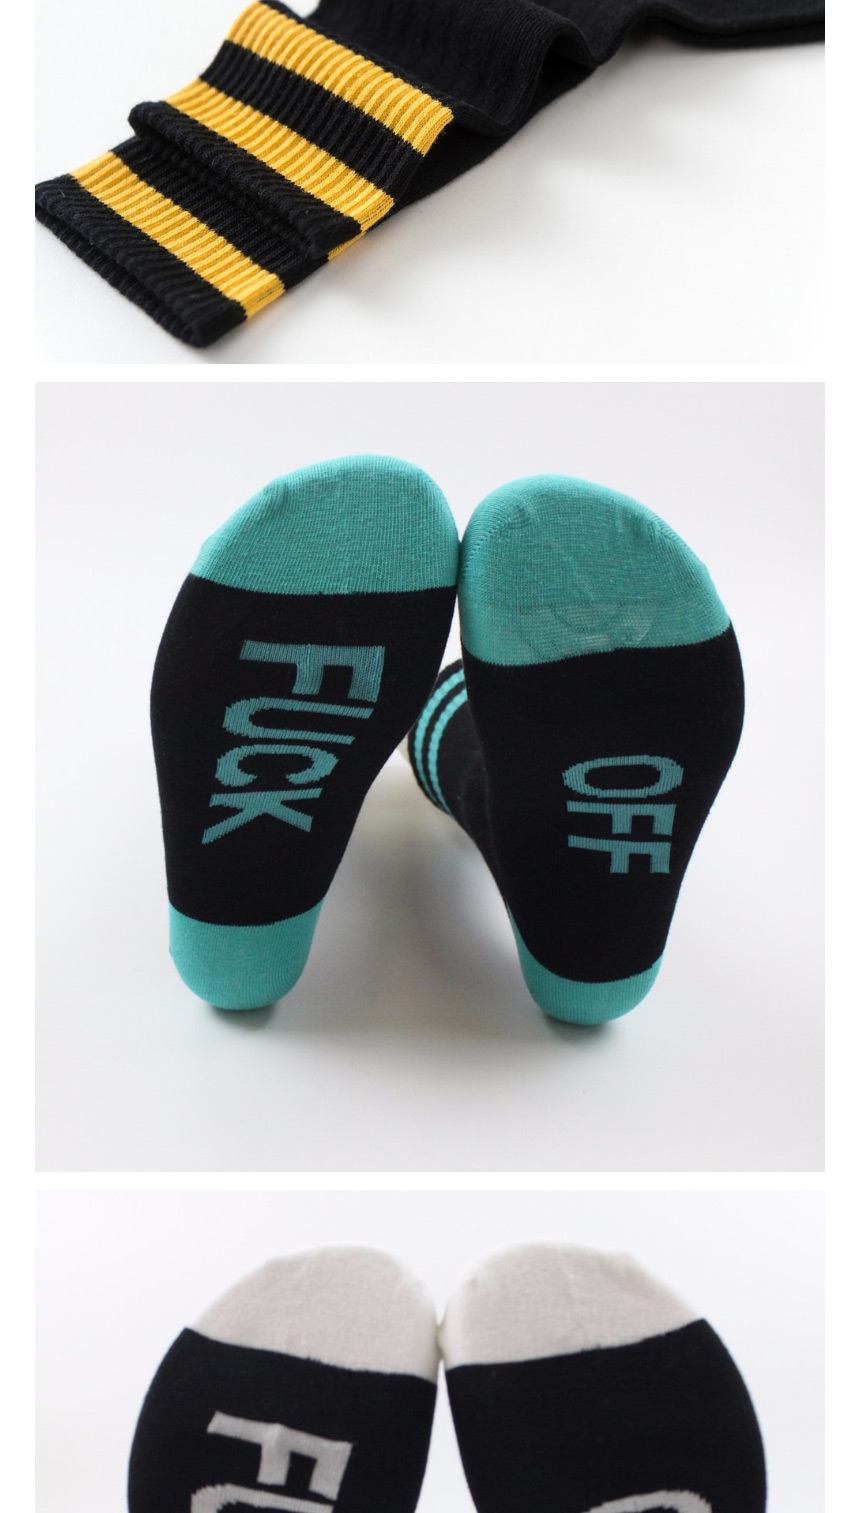 Fashion Black Powder Mens Cotton Socks With Contrasting Letters,Fashion Socks